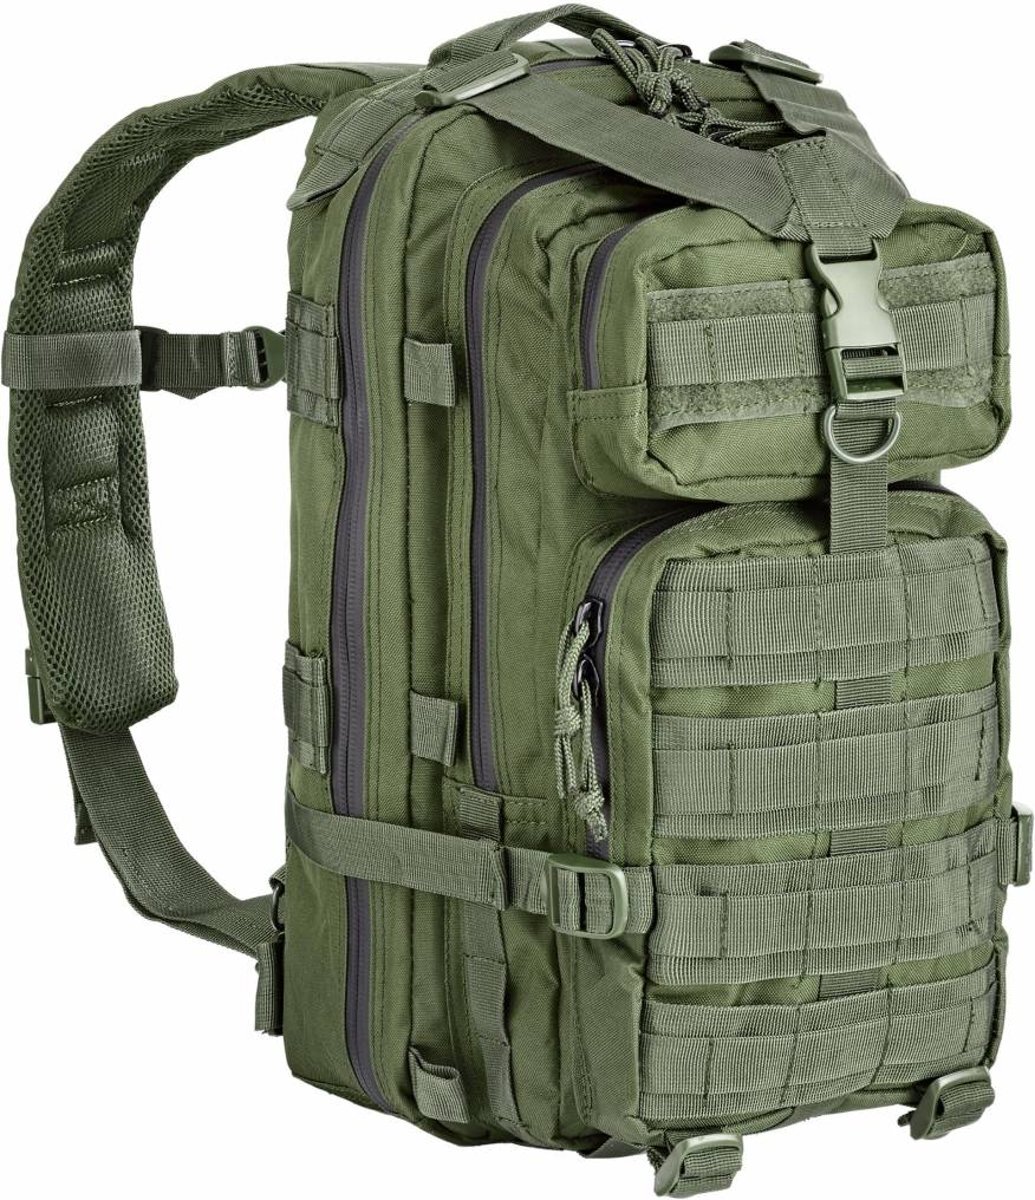 Defcon 5 Defcon 5 - Tactical Backpack - legerrugzak - 35L - Olive green